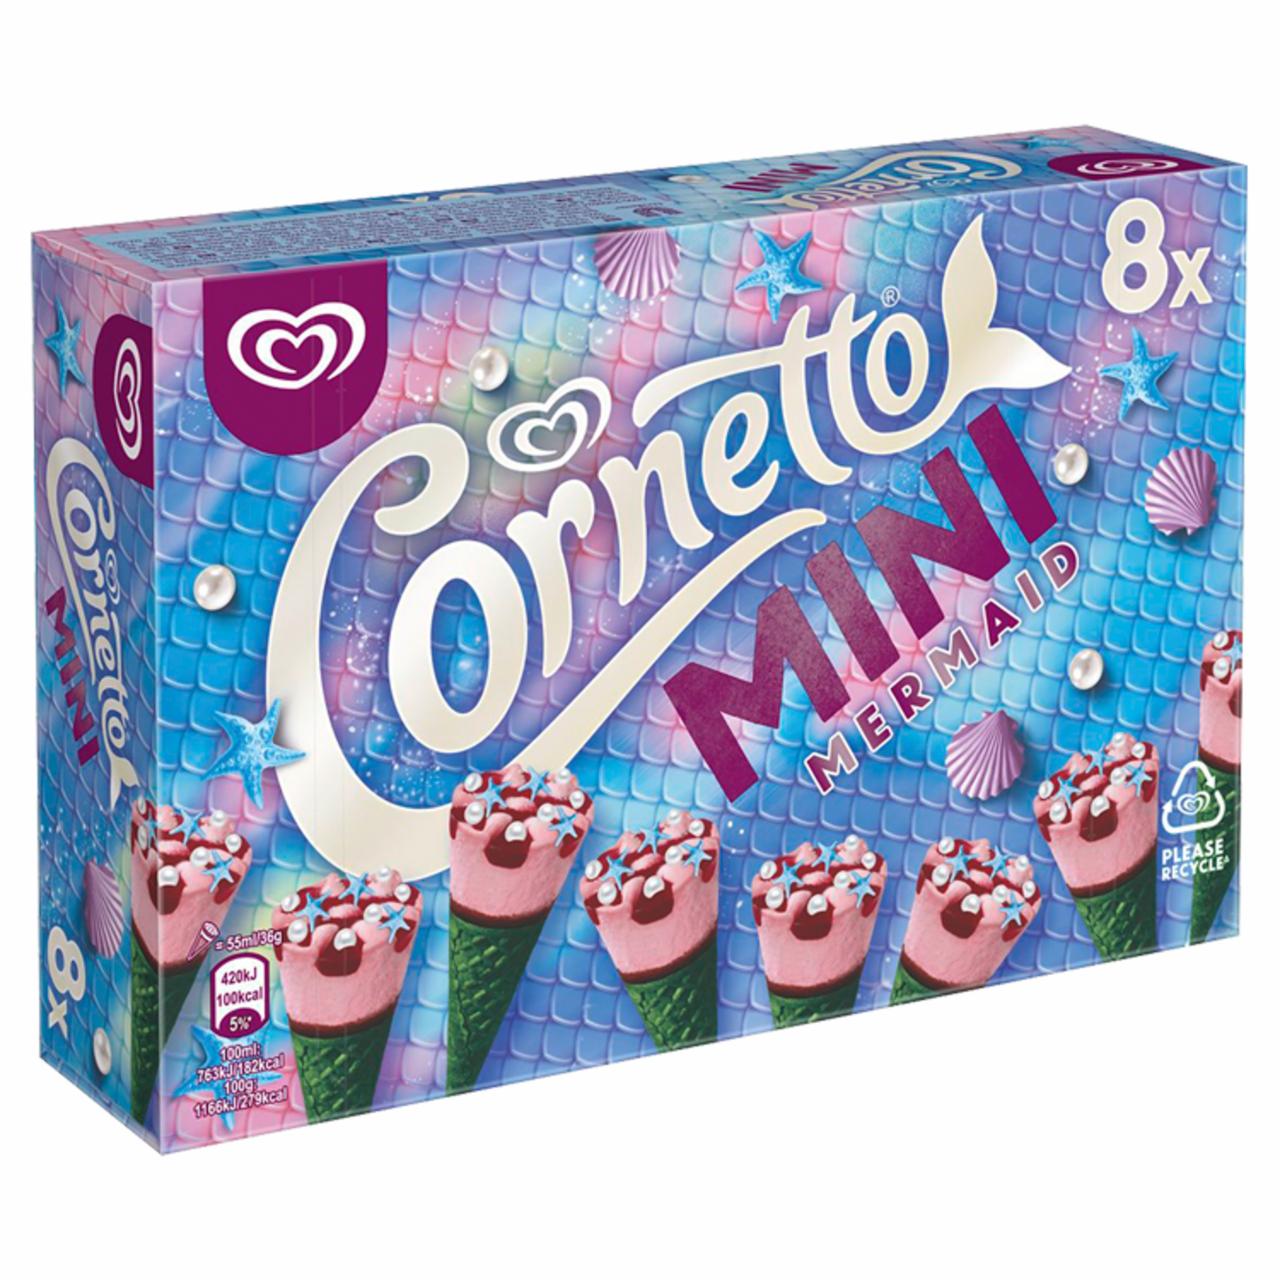 Képek - Cornetto Mini multipack jégkrém Málna-Matcha Tea 8 x 55 ml